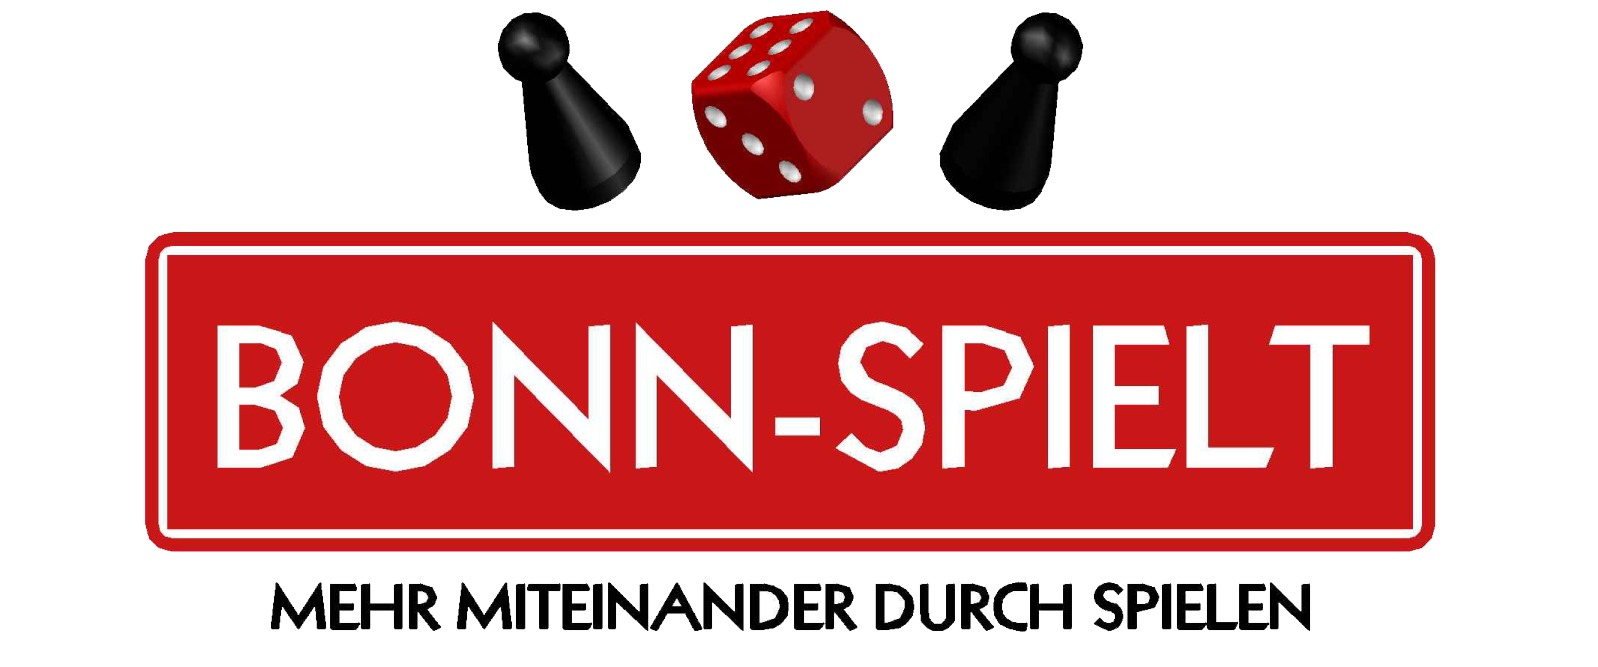 BONN-SPIELT 2021